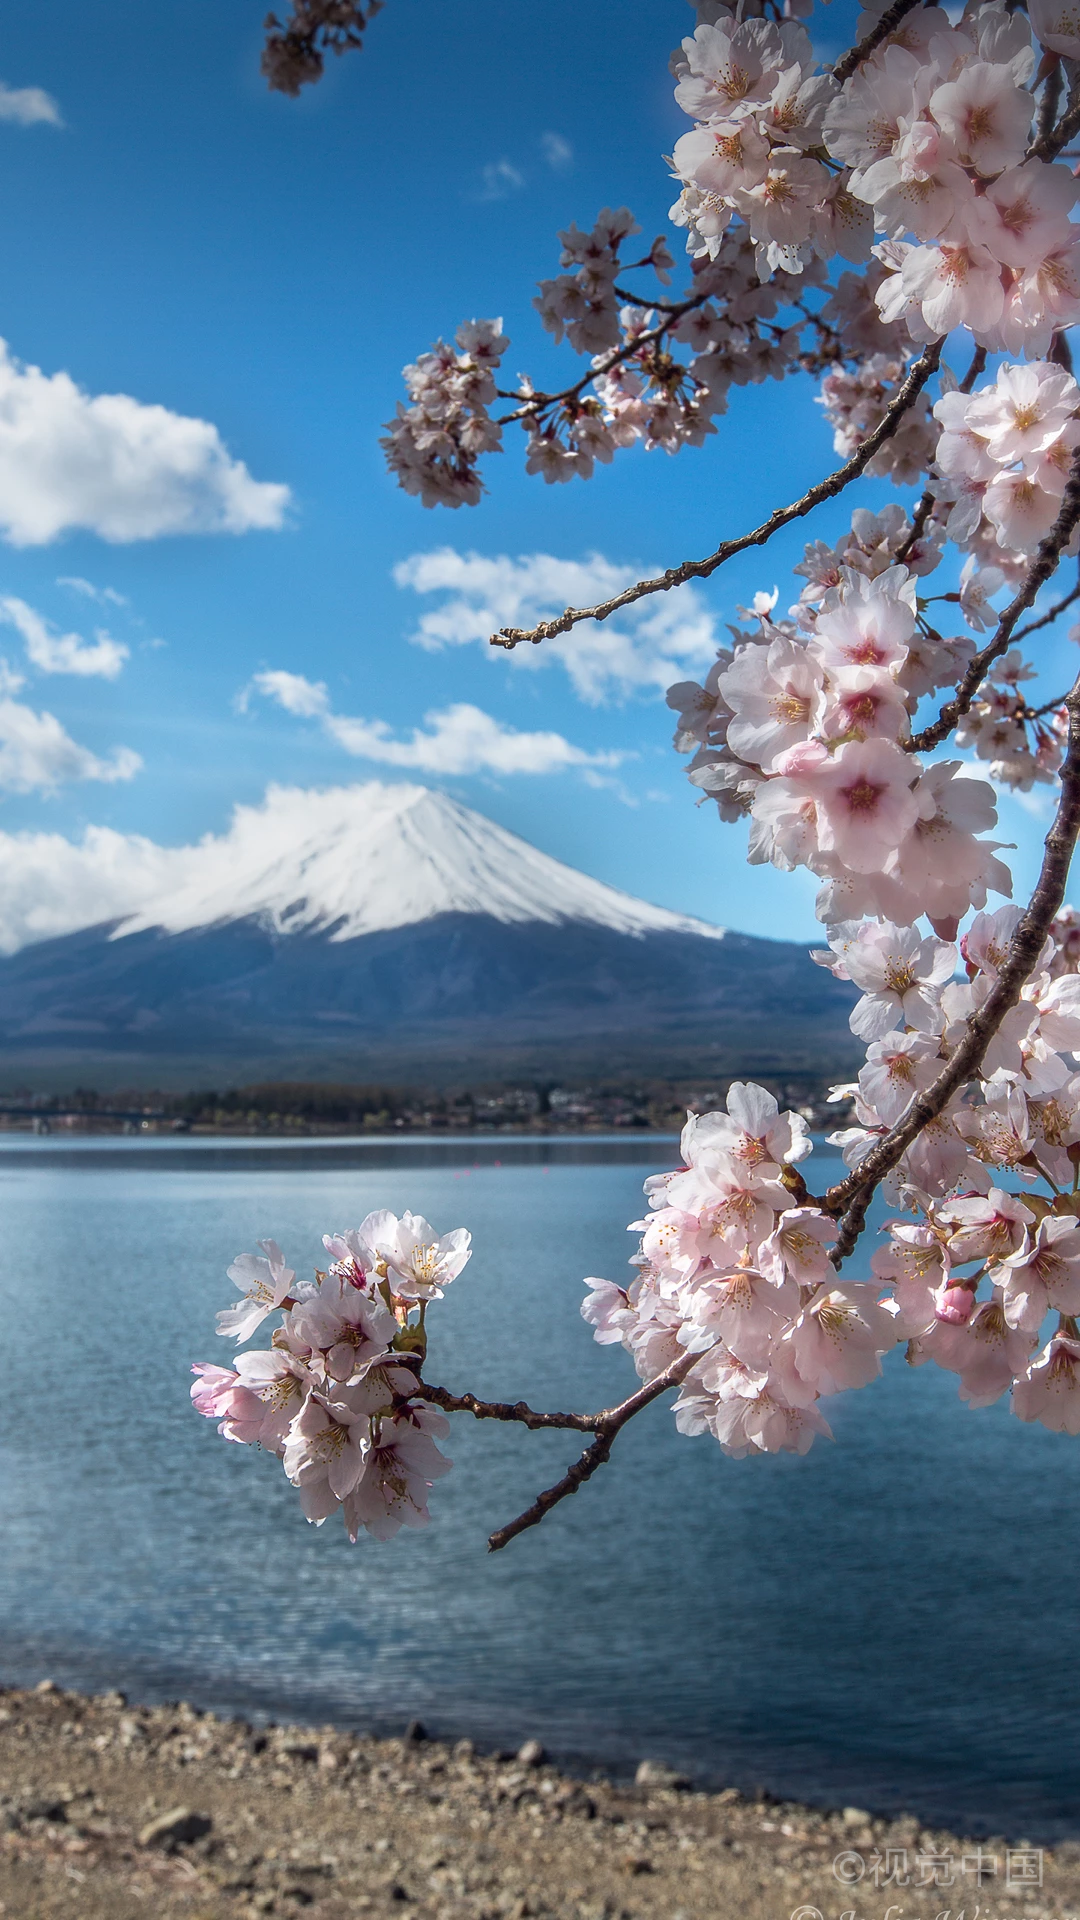 富士山 堆糖 美图壁纸兴趣社区